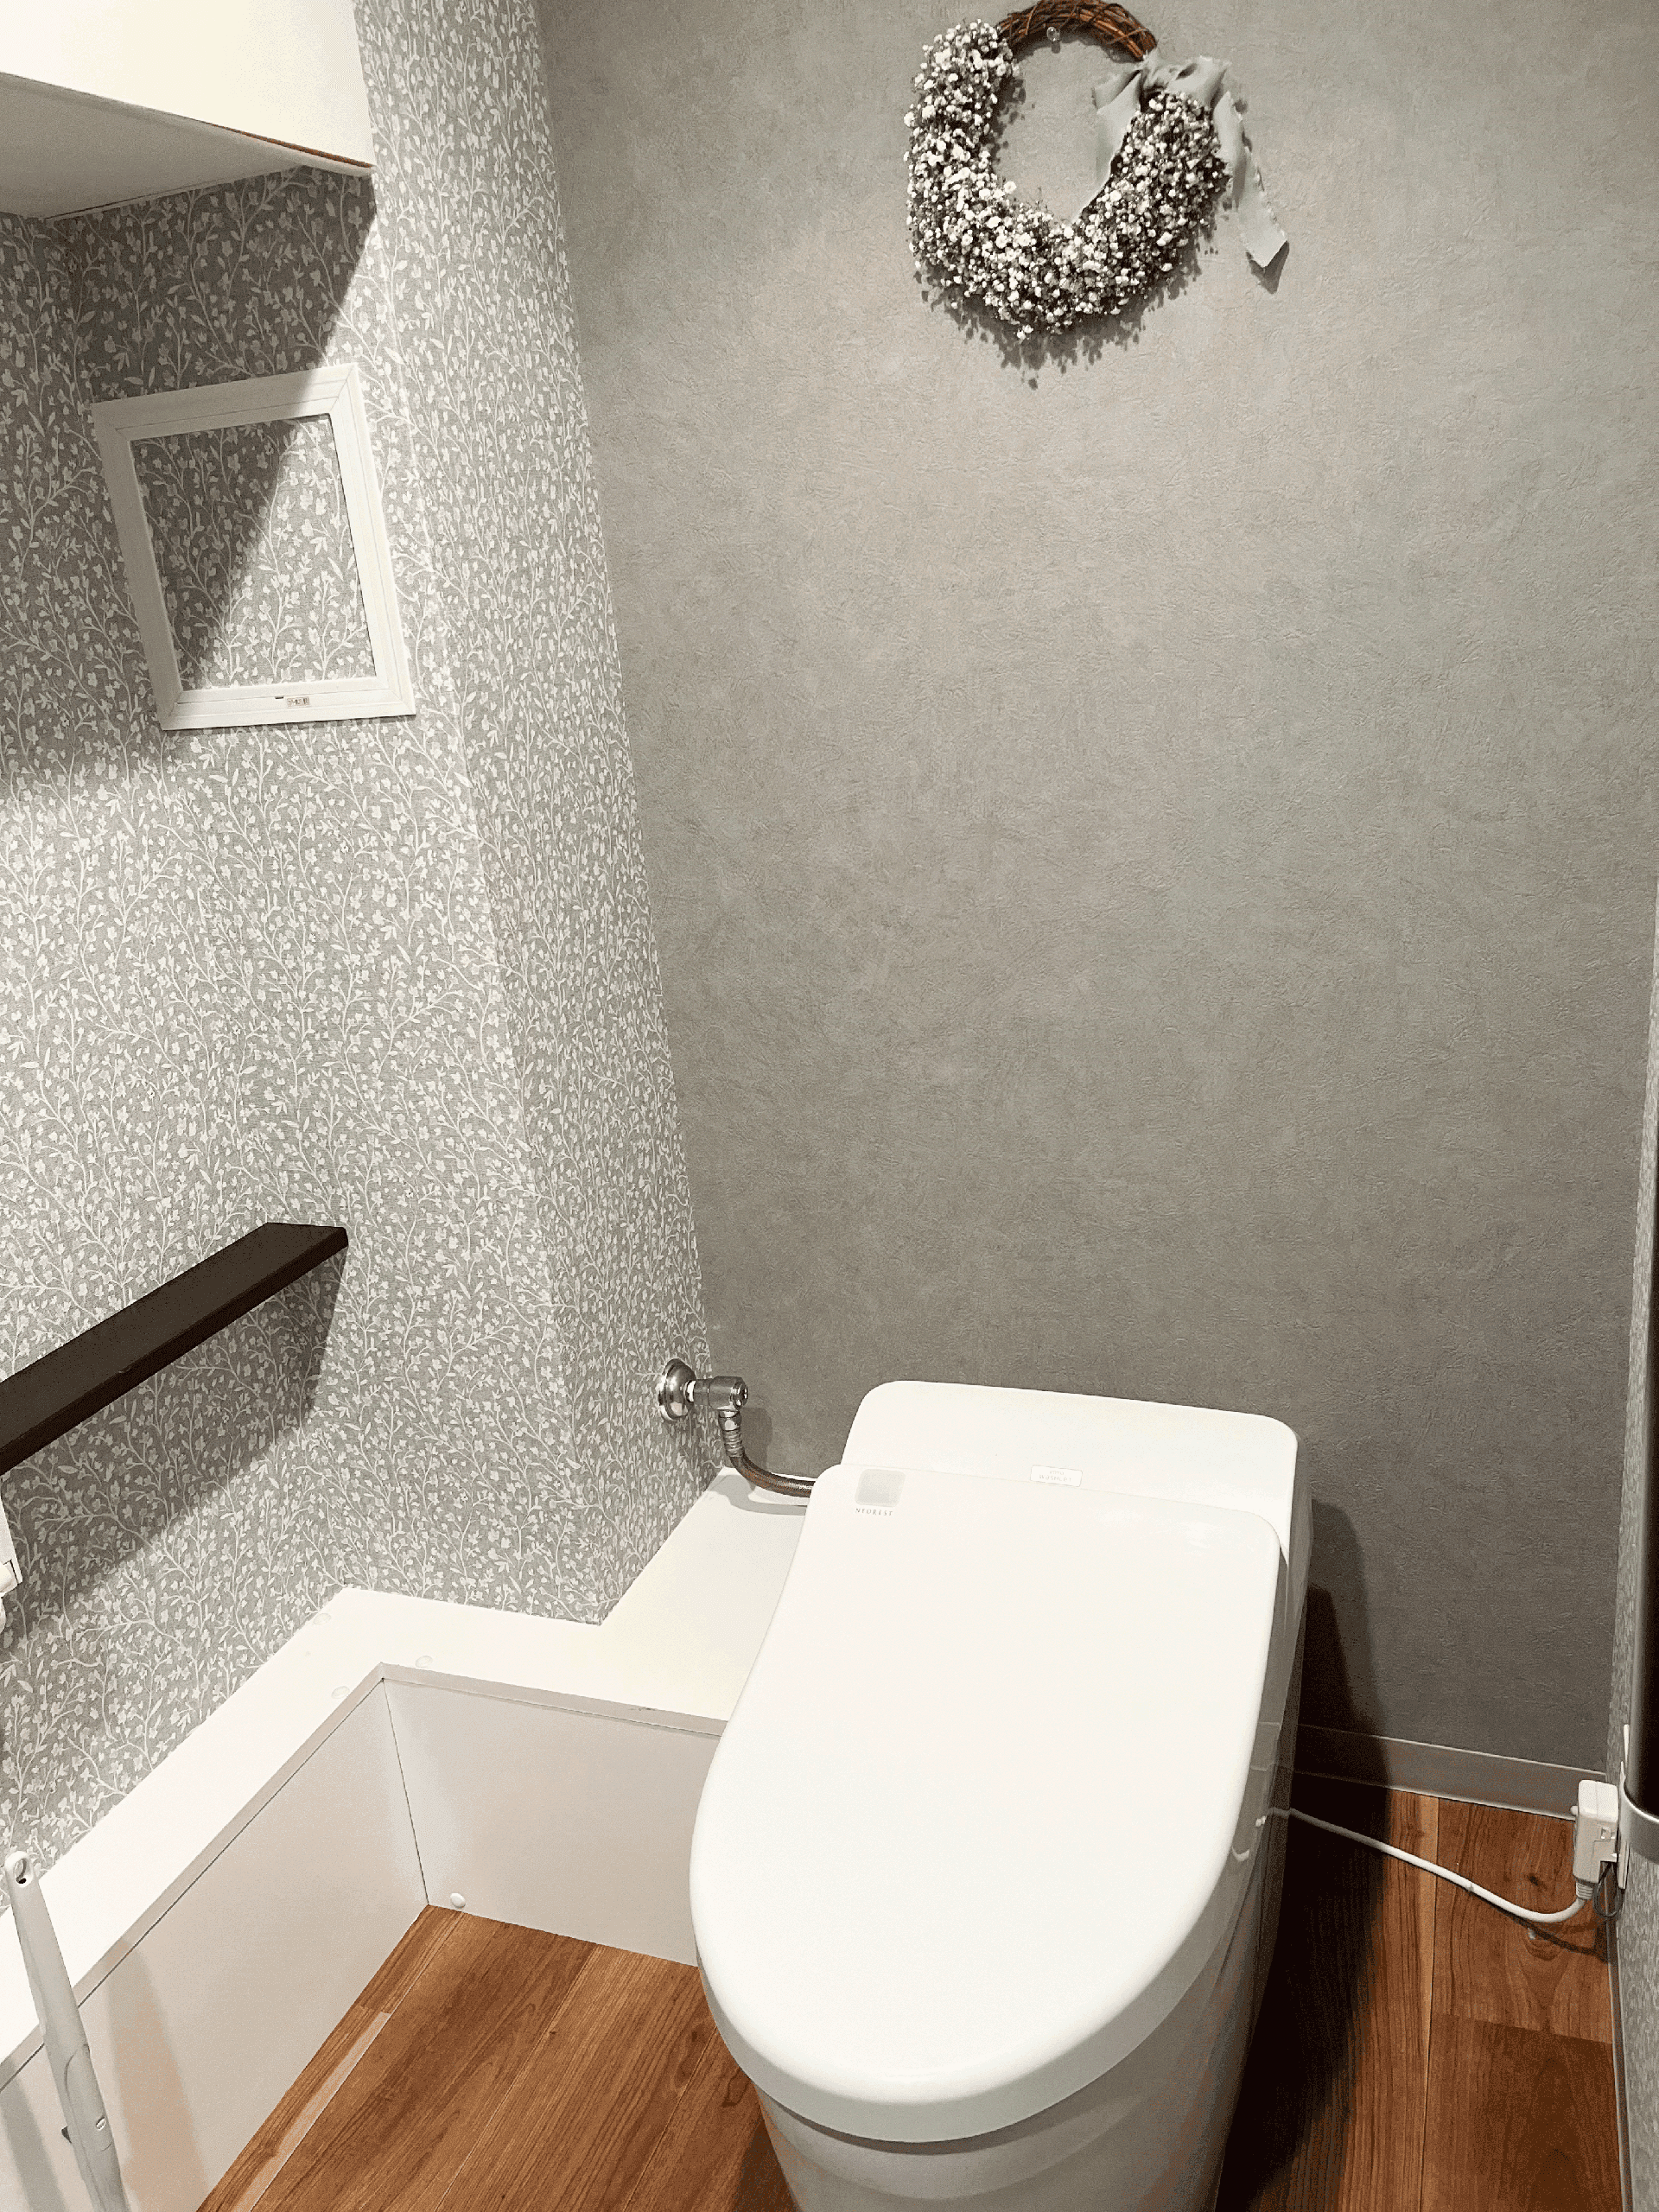 トイレ内装貼替工事のアフター写真